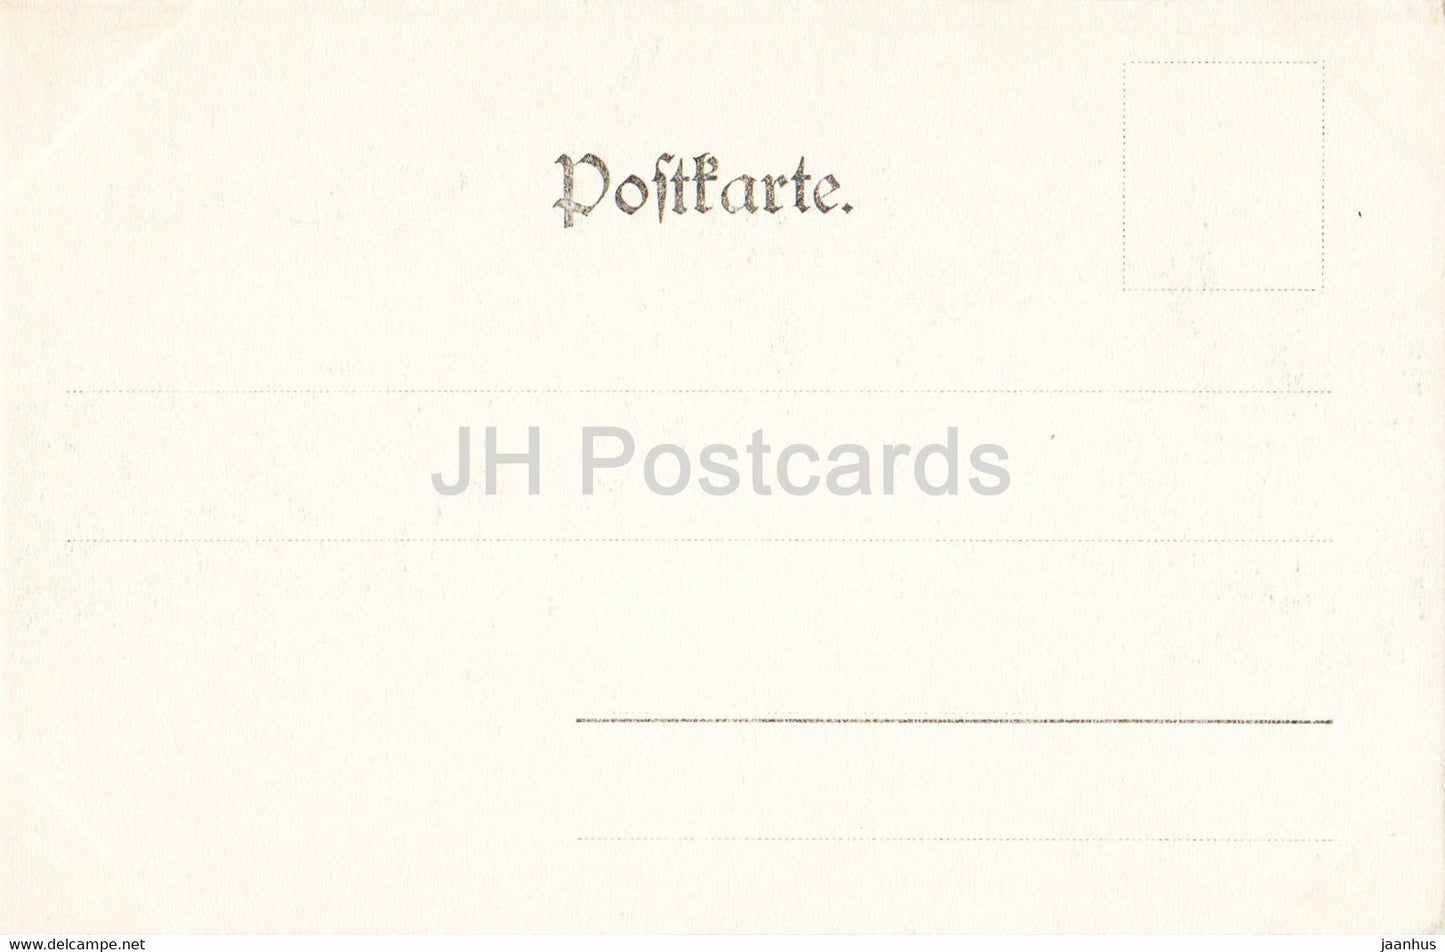 Berlin - Kgl Bibliothek - Bibliothek - alte Postkarte - Deutschland - unbenutzt